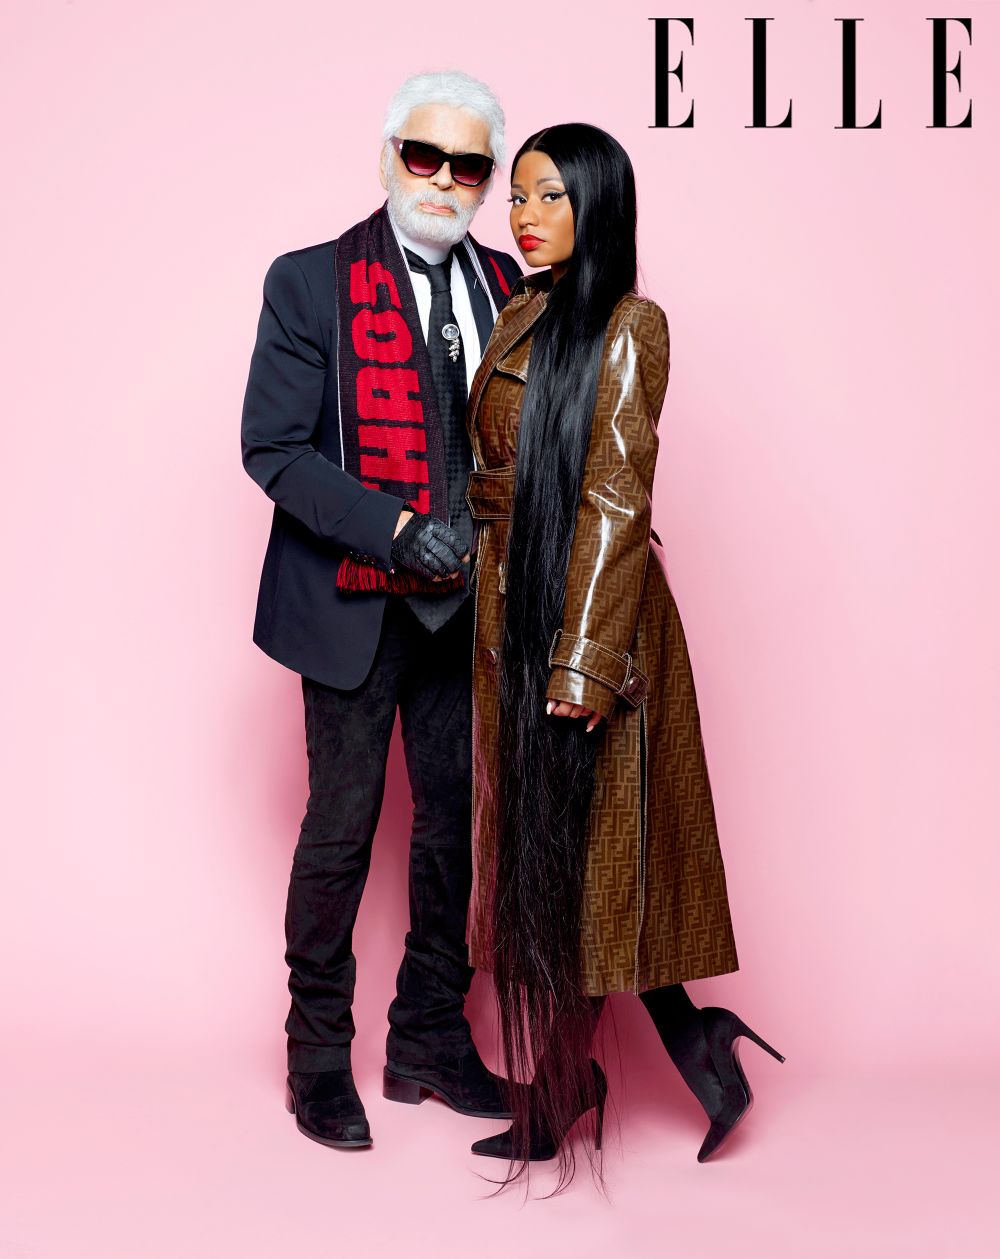 Nicki Minaj and Karl Lagerfeld in ‘Elle’